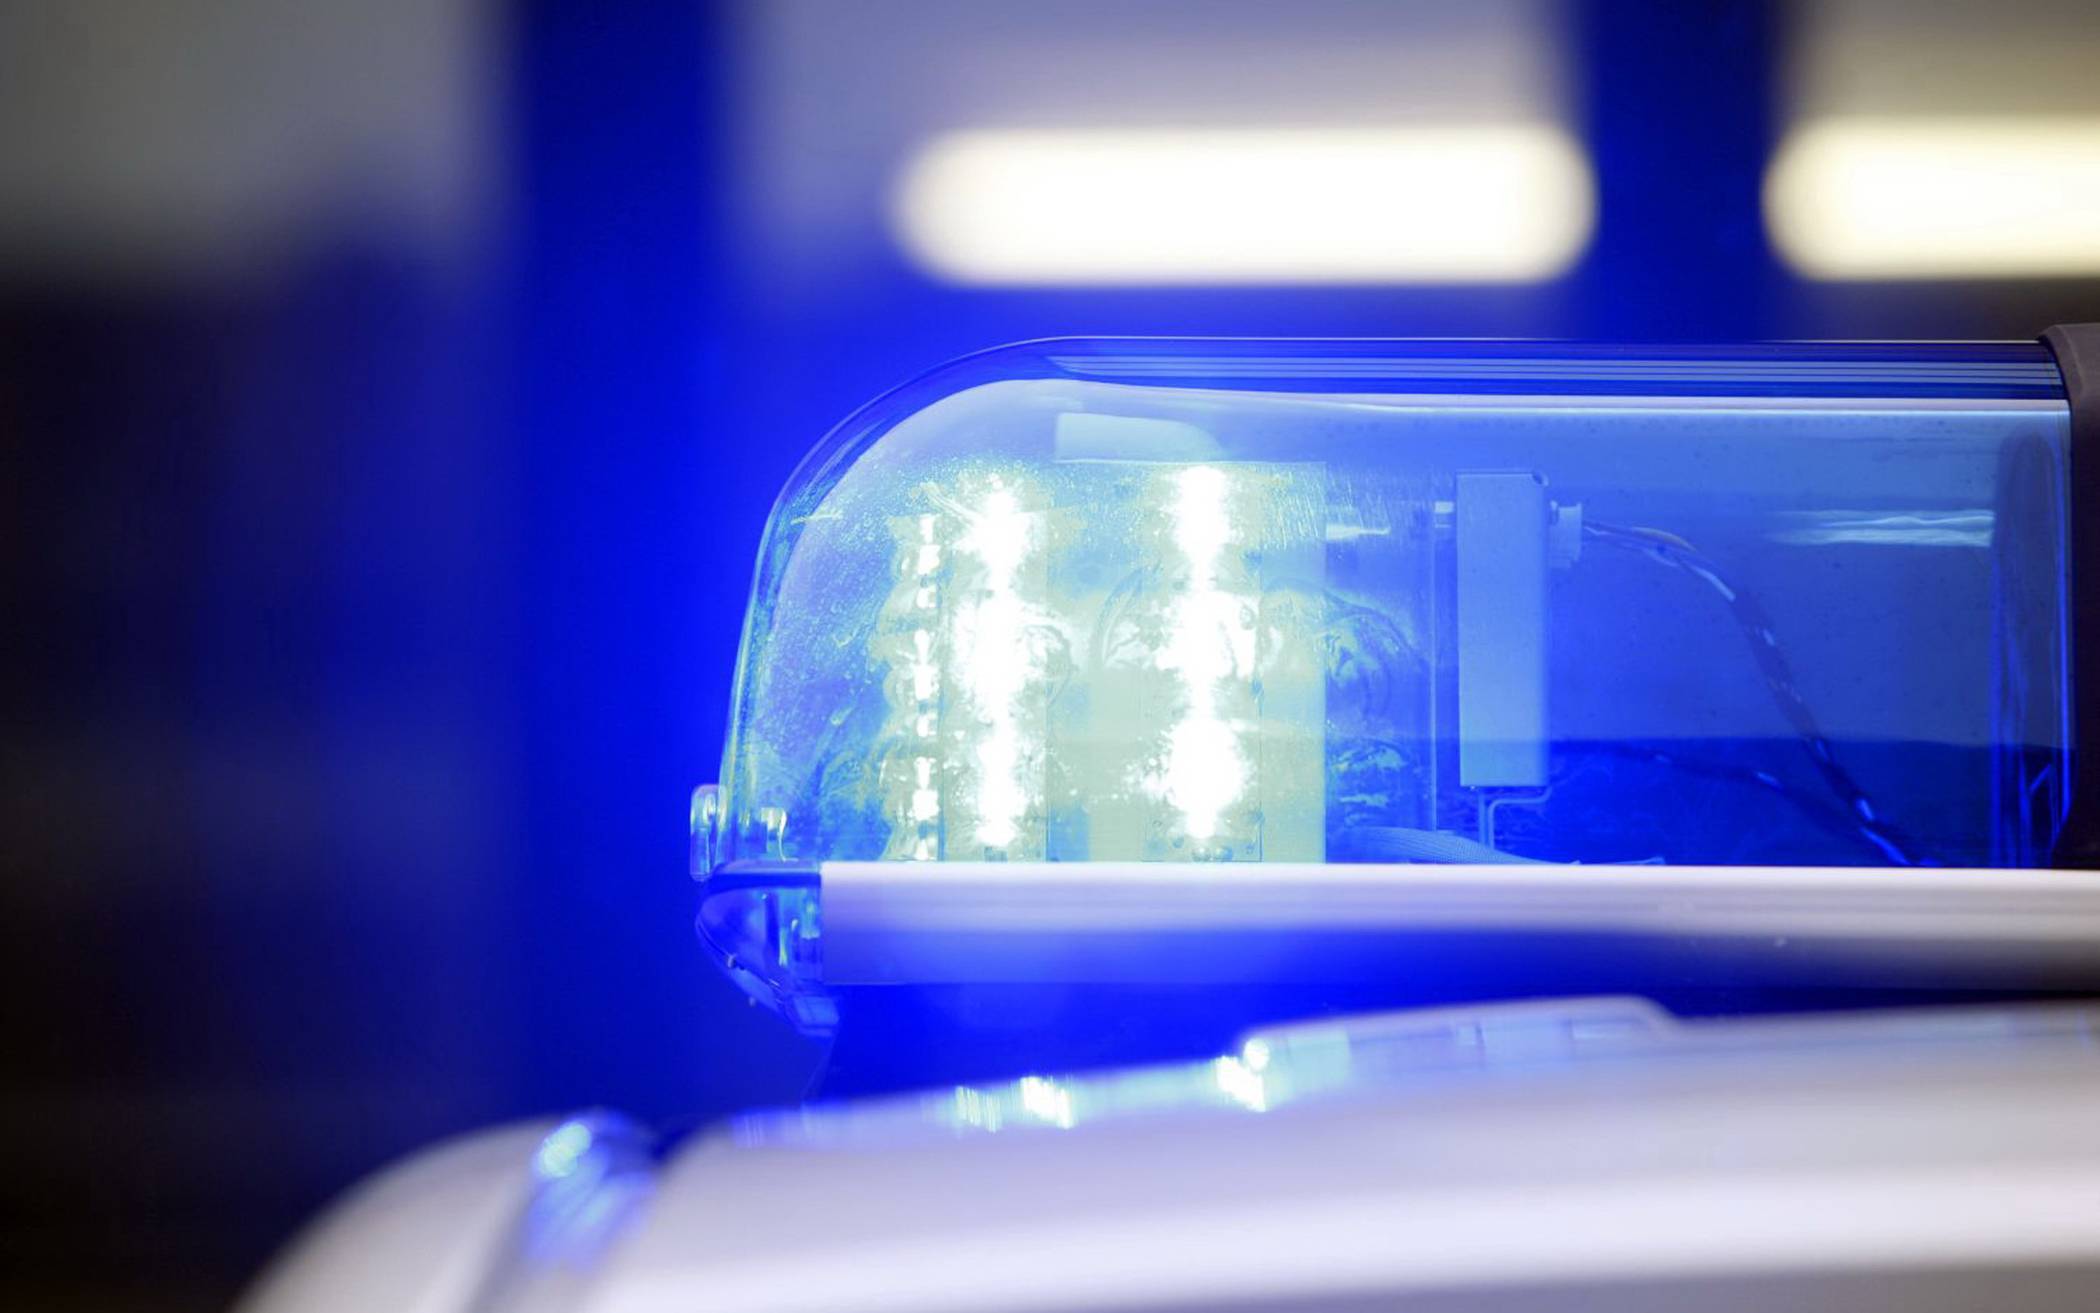 Derzeit keine Hinweise auf ein Gewaltverbrechen: 71-jähriger Düsseldorfer tot aufgefunden